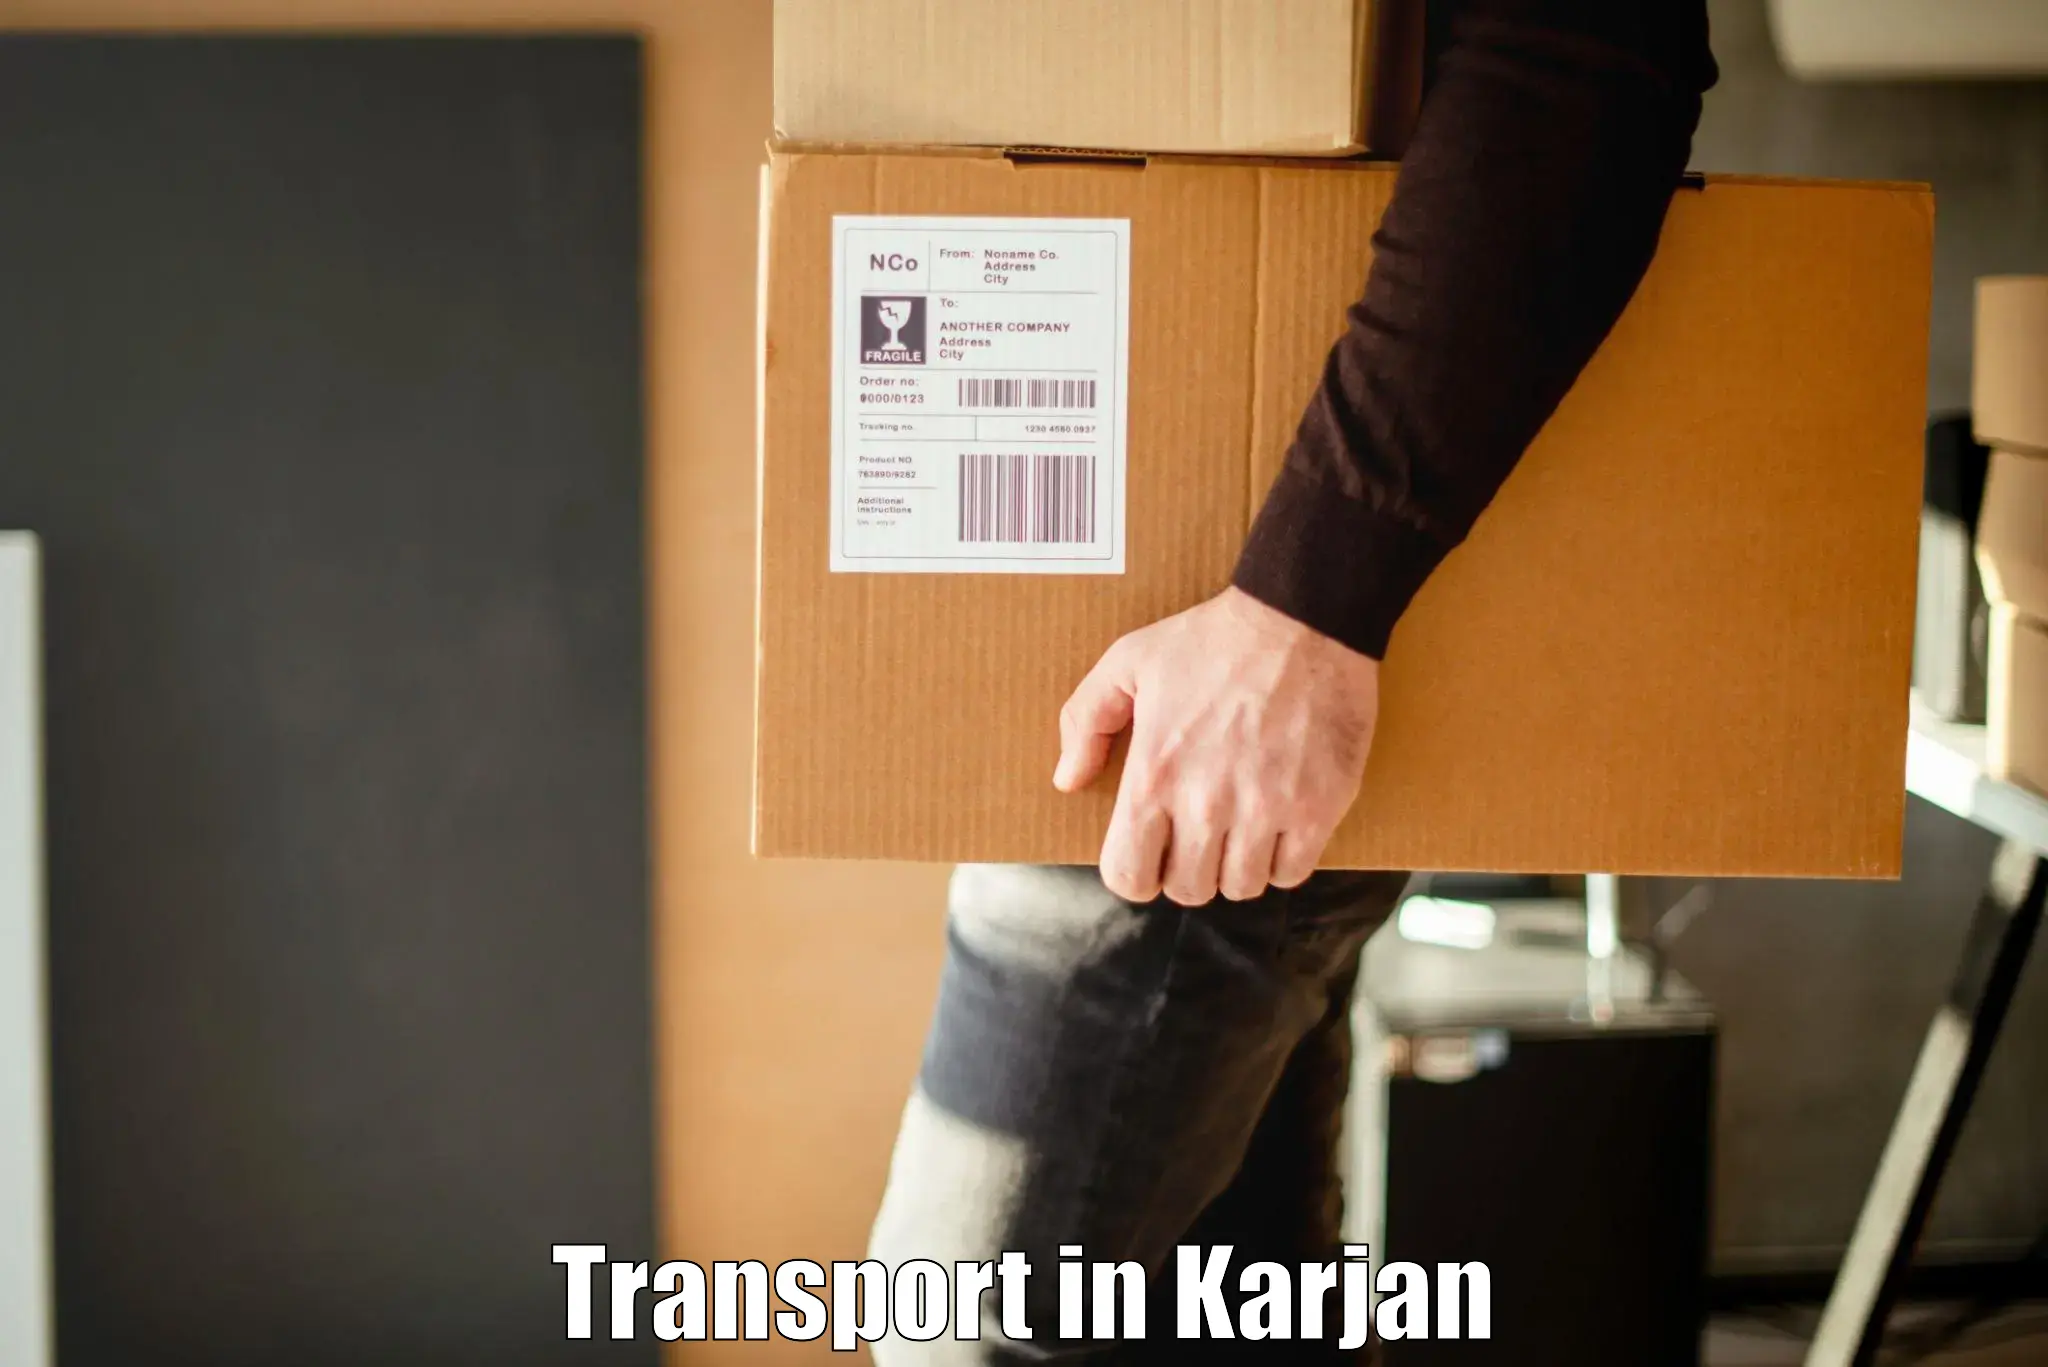 Vehicle transport services in Karjan